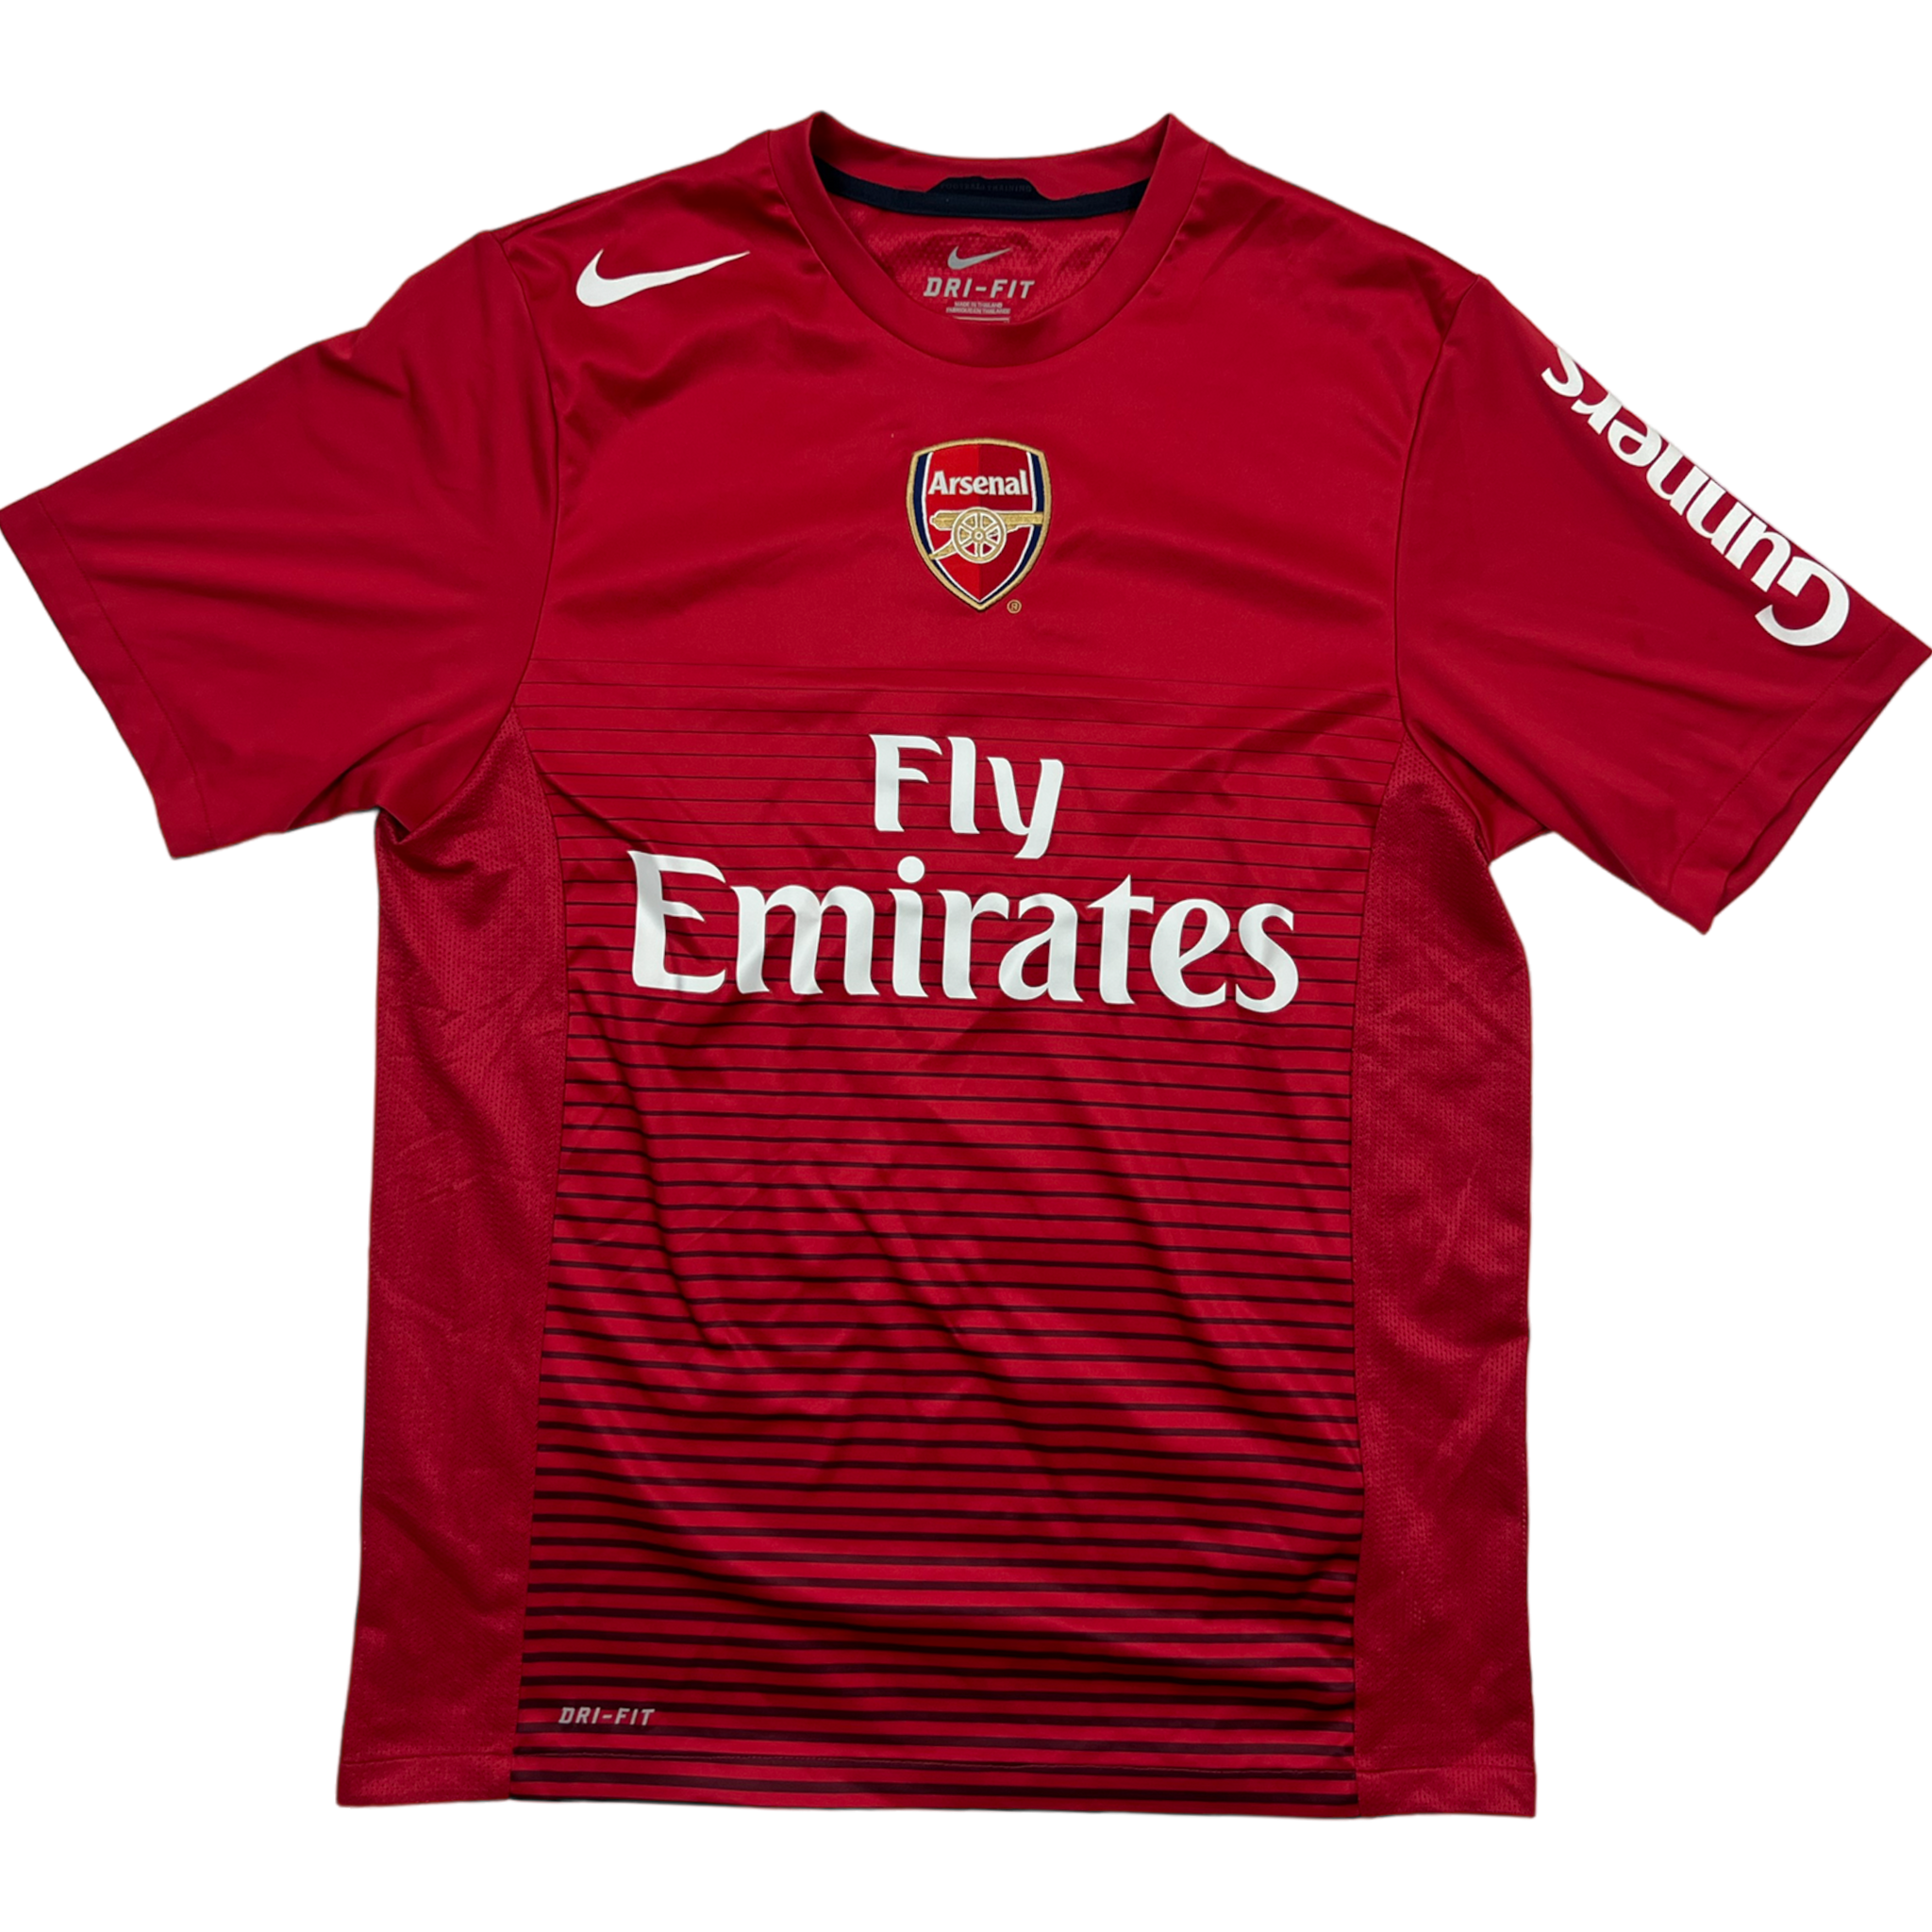 Nike Arsenal FC Jersey (M)